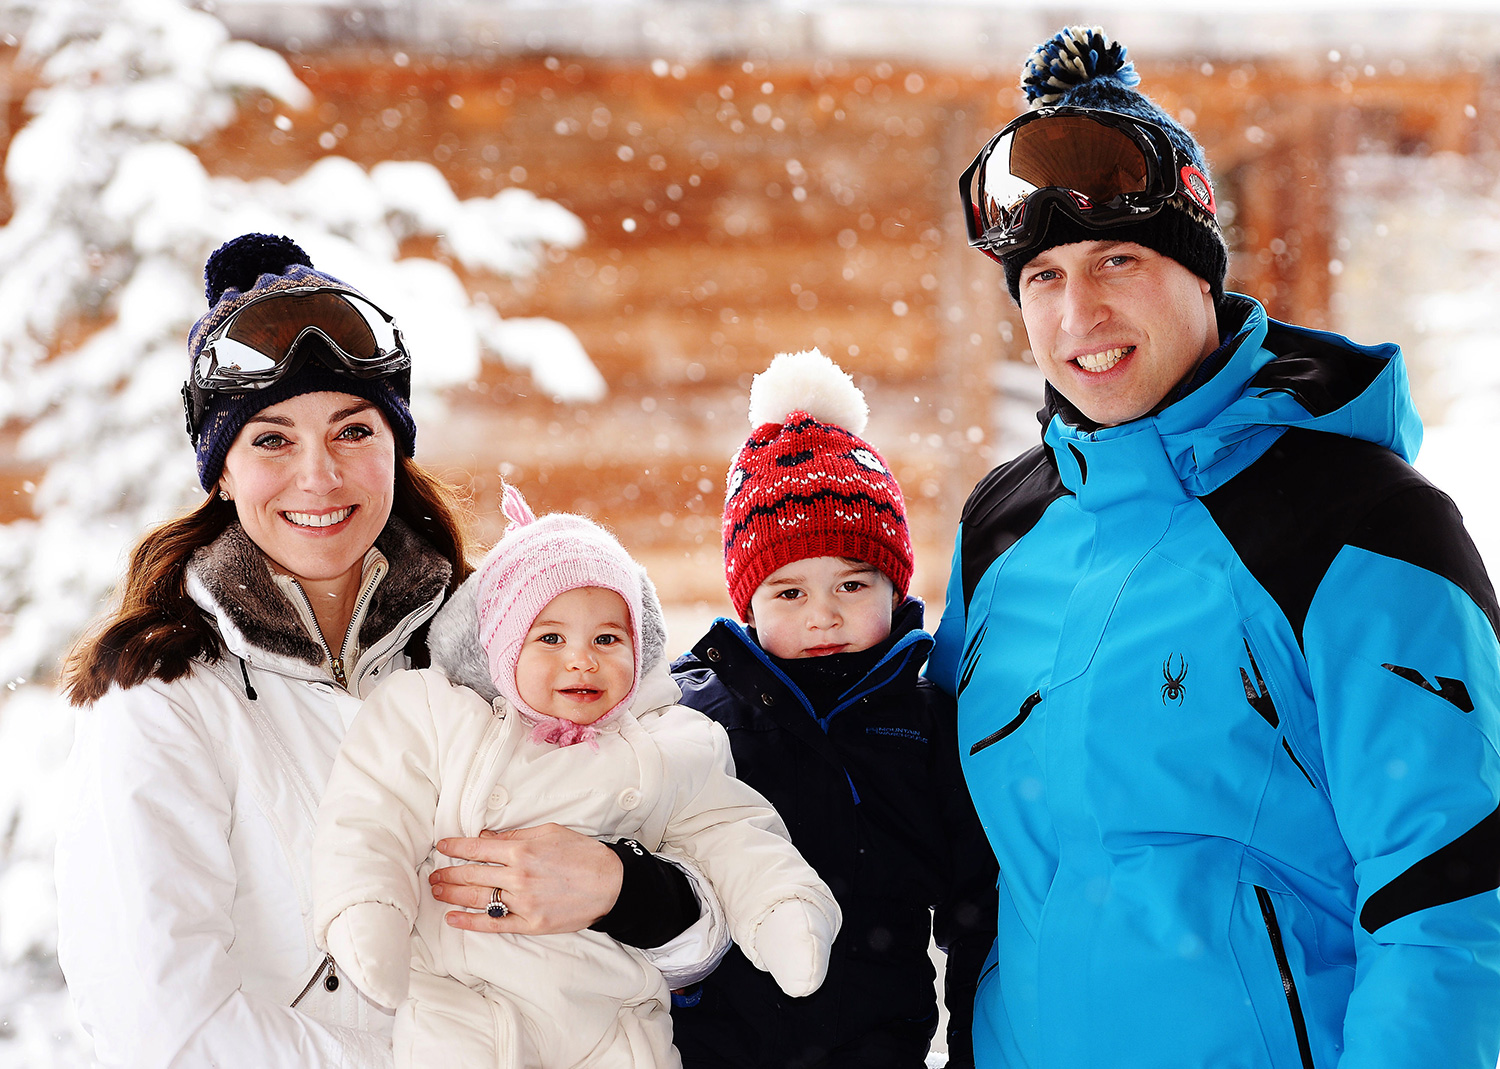 威廉凱特法國阿爾卑斯度假_夏綠蒂小公主、喬治王子玩雪初體驗6.jpg